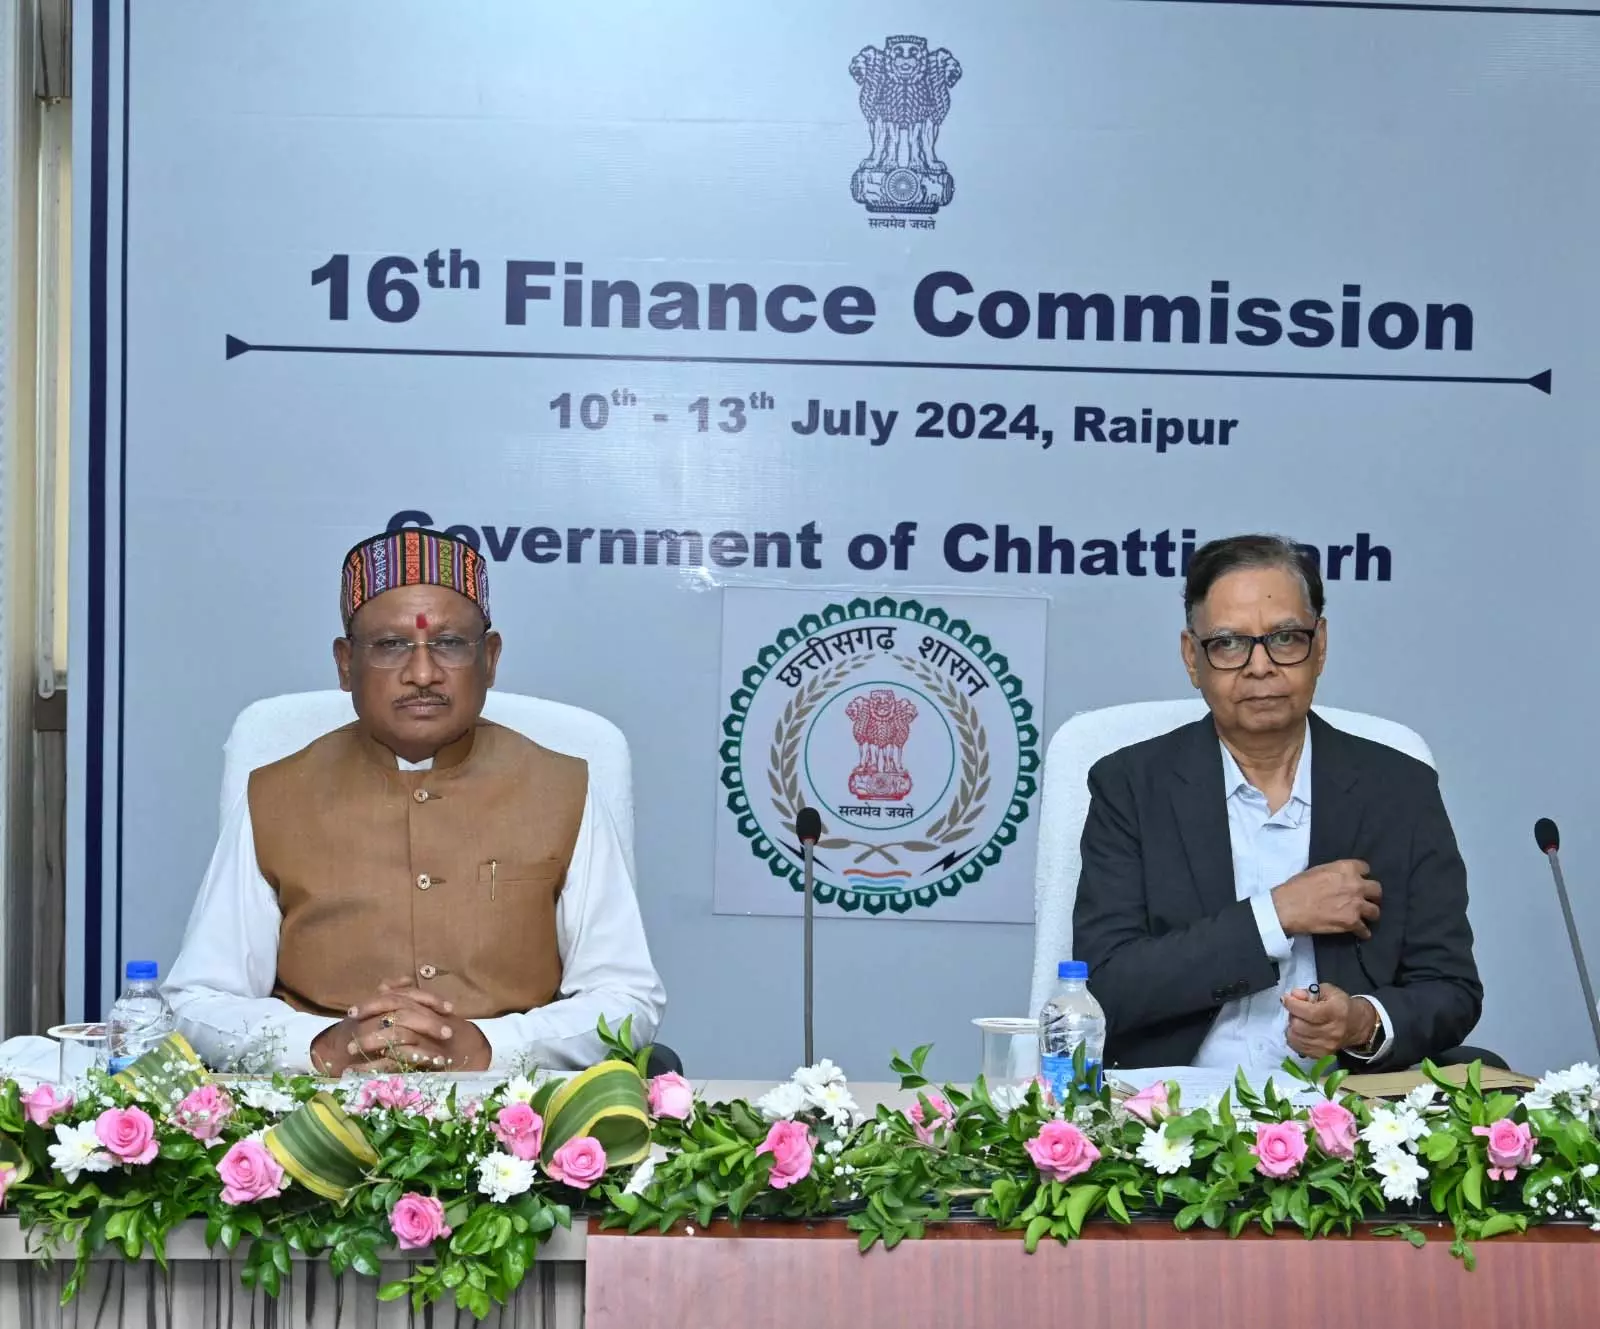 CM विष्णुदेव साय ने केन्द्रीय वित्त आयोग से मांगा छत्तीसगढ़ के लिए विशेष अनुदान